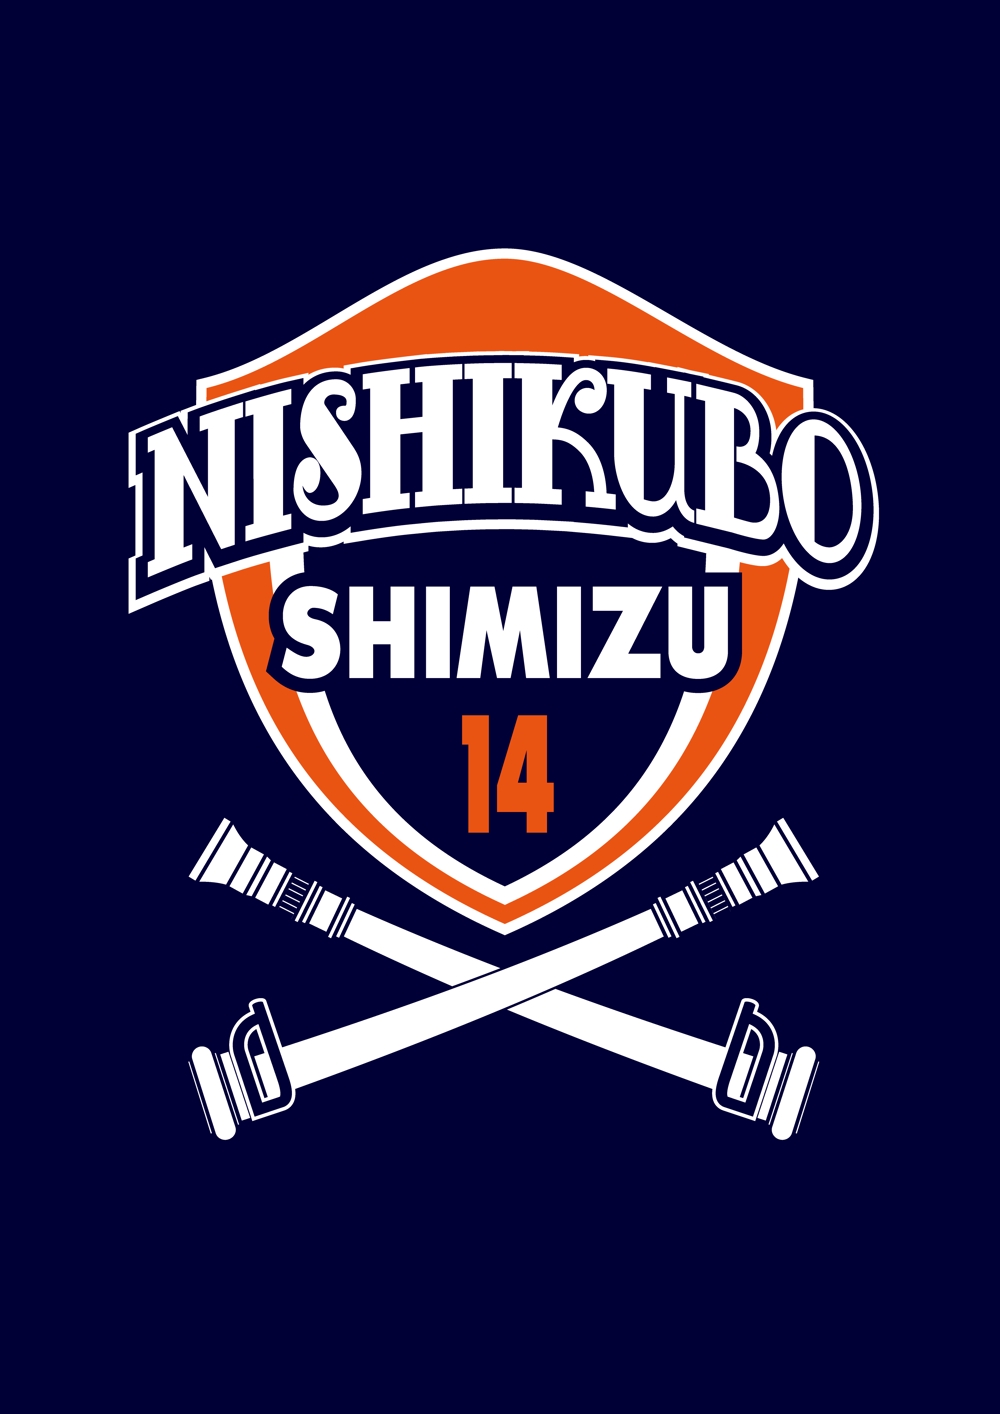 NishikuboSIMIZU-14.png